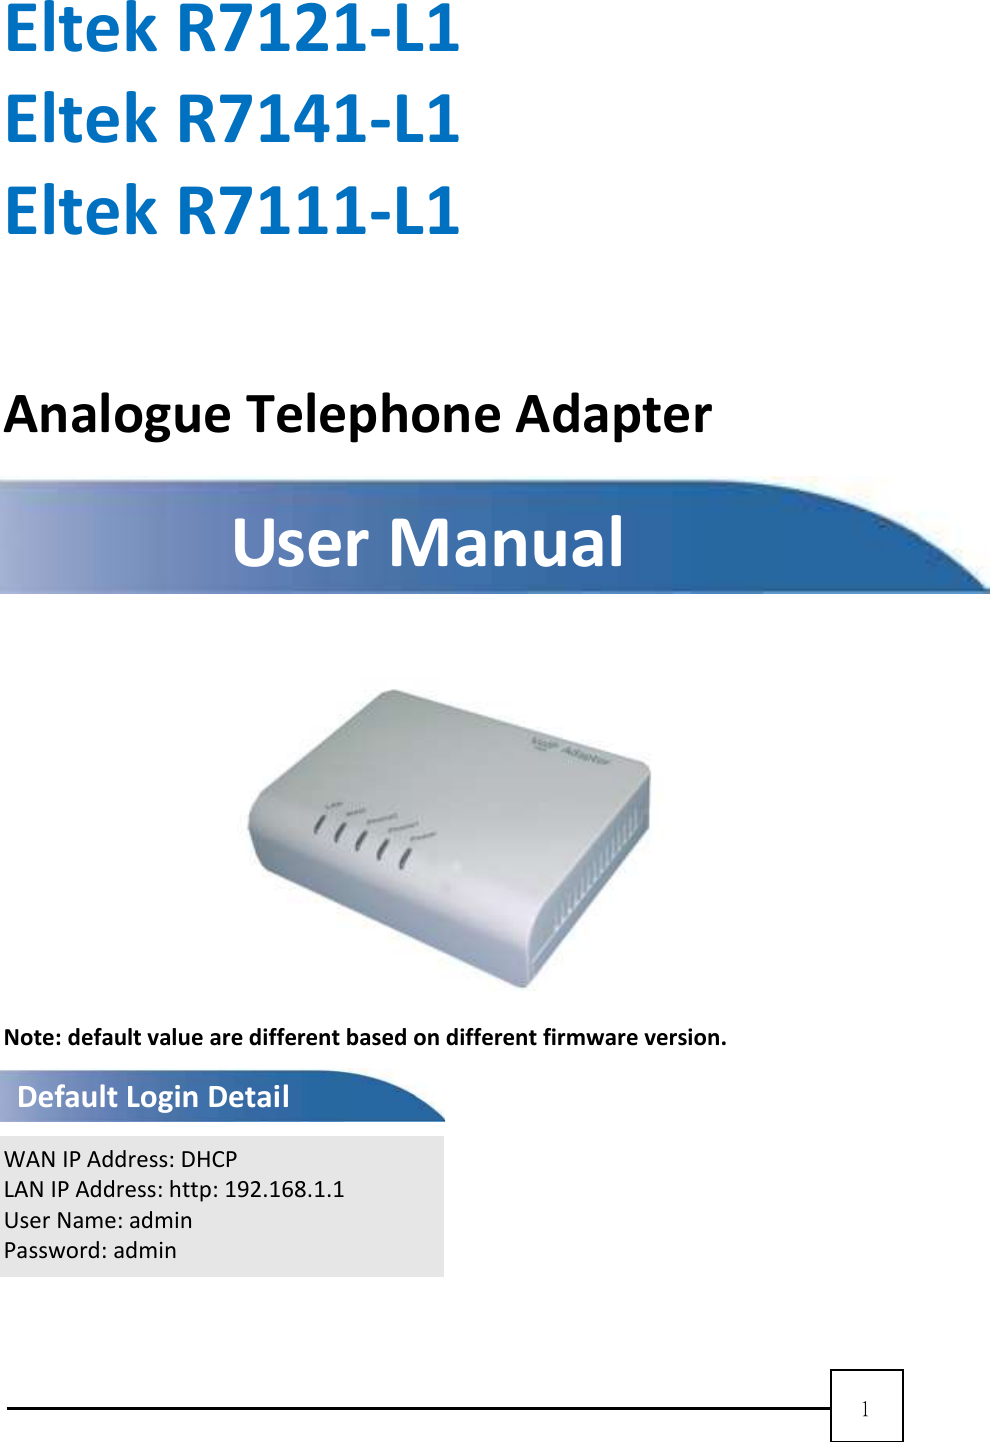  1    Eltek R7121-L1 Eltek R7141-L1 Eltek R7111-L1  Analogue Telephone Adapter        Note: default value are different based on different firmware version.   WAN IP Address: DHCP LAN IP Address: http: 192.168.1.1 User Name: admin Password: admin   User Manual Default Login Detail 